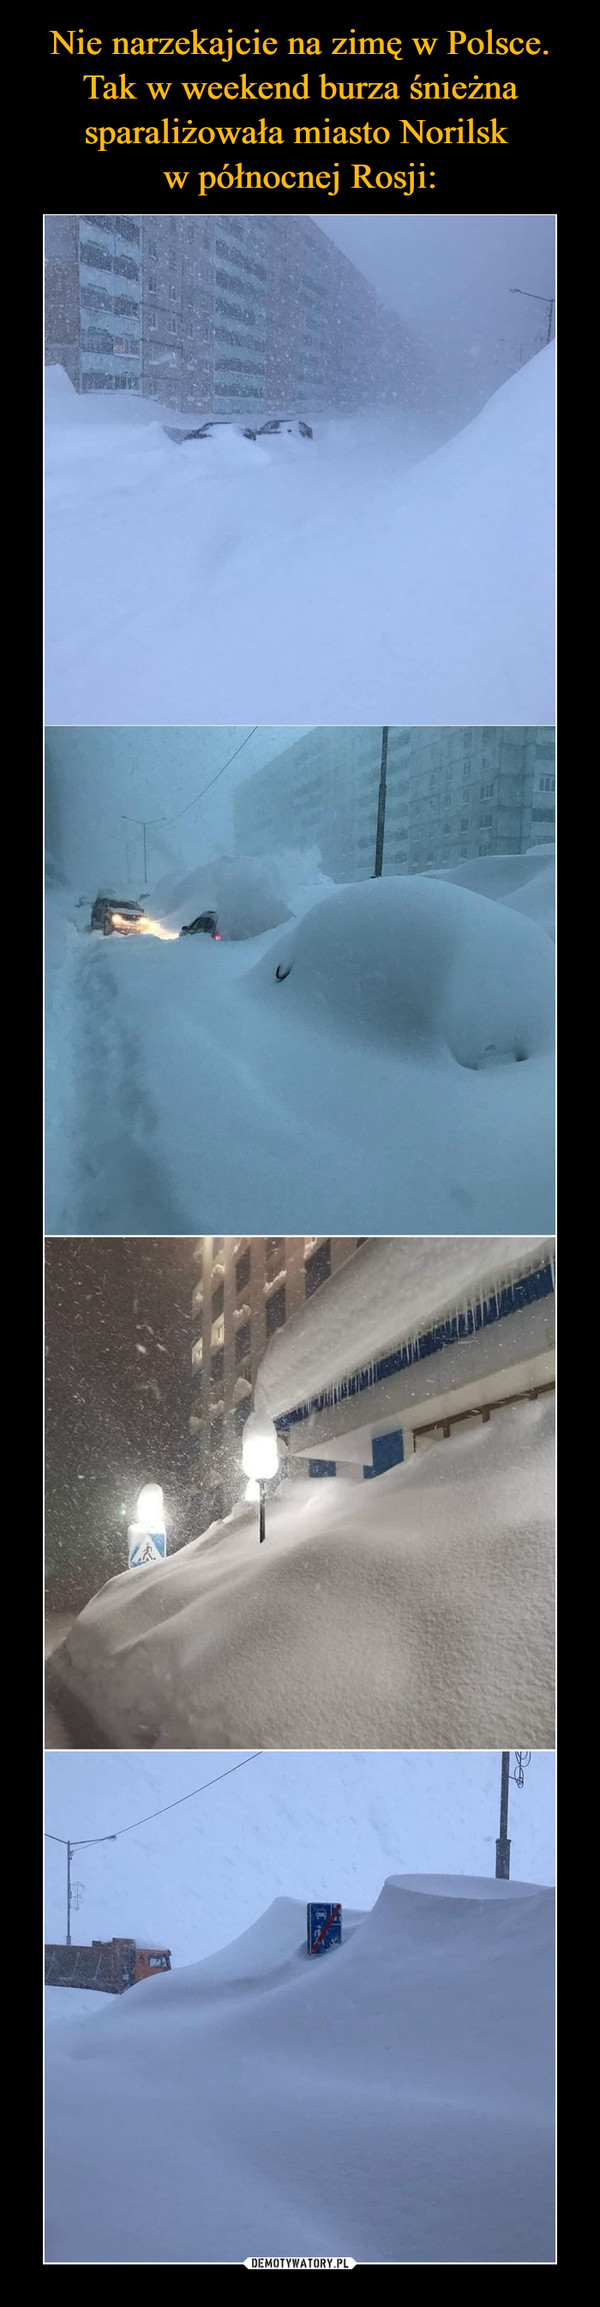 Nie narzekajcie na zimę w Polsce. Tak w weekend burza śnieżna sparaliżowała miasto Norilsk 
w północnej Rosji: